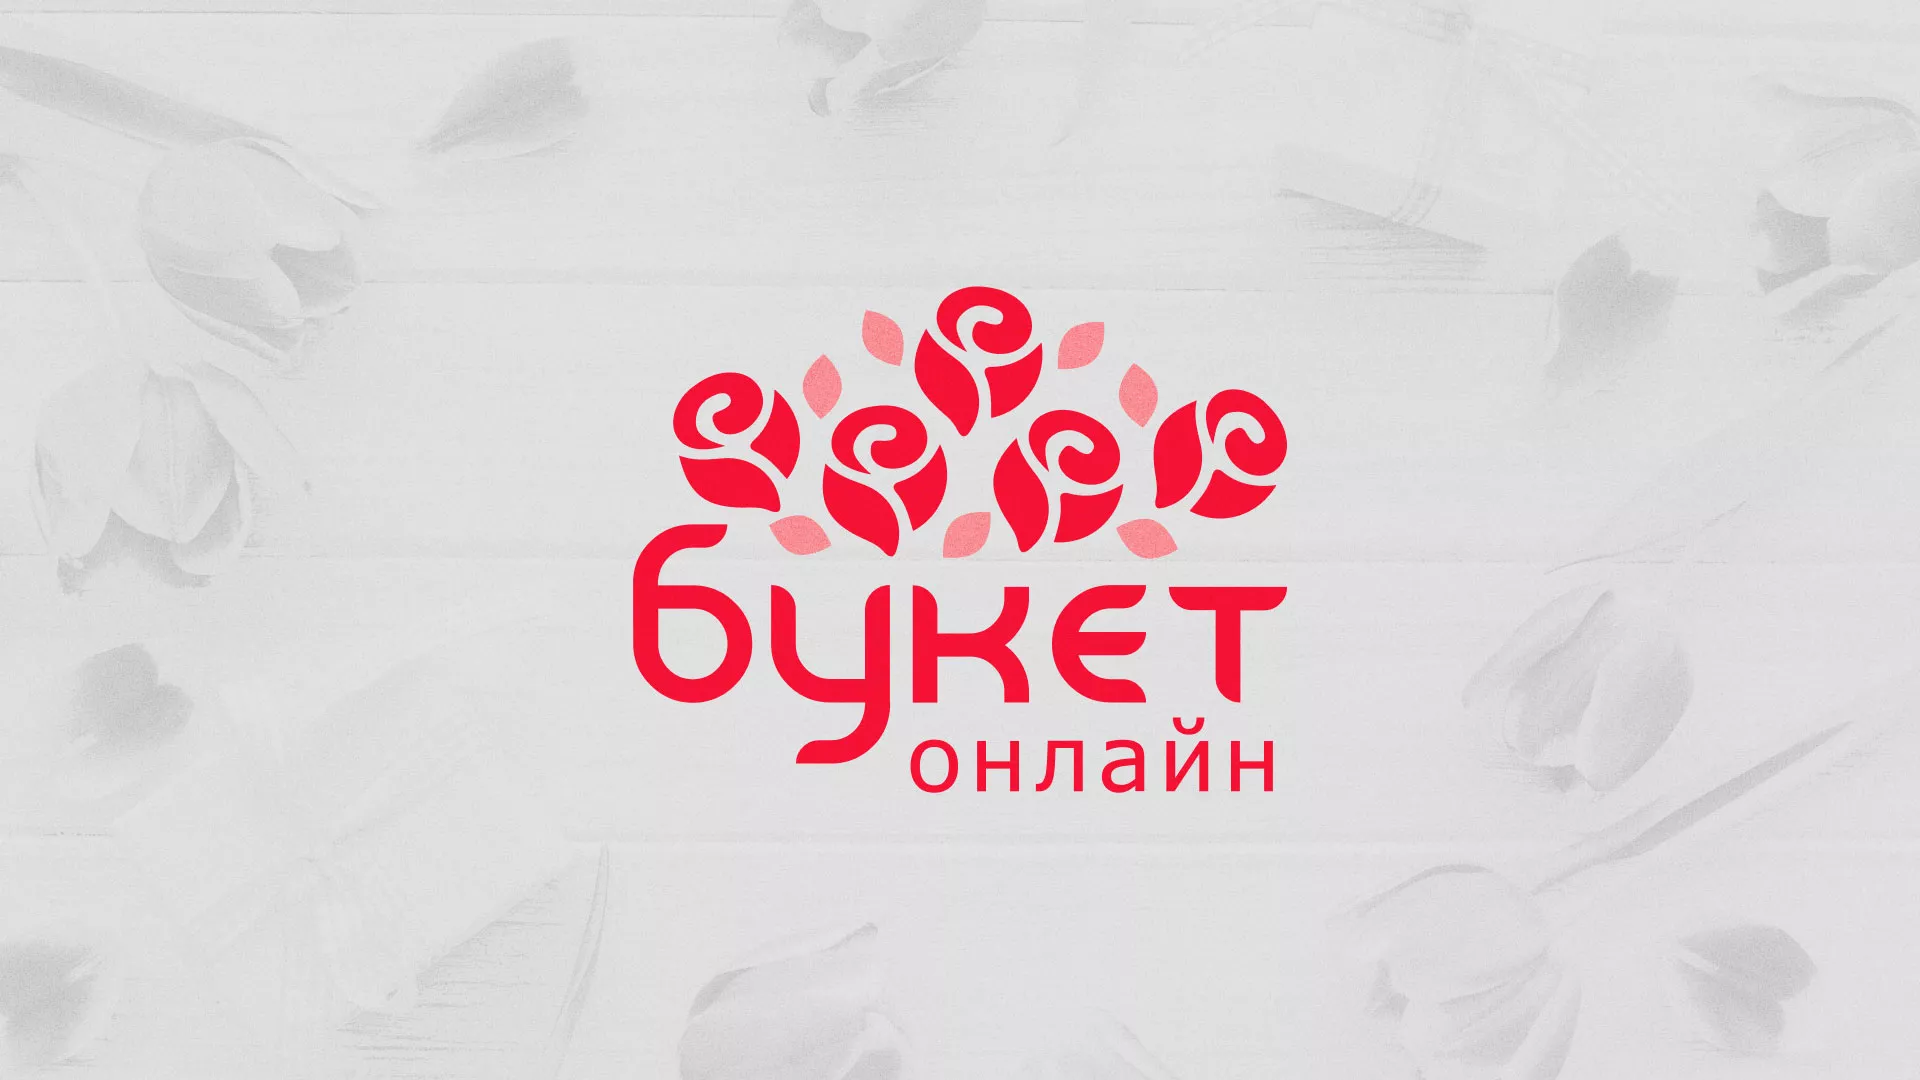 Создание интернет-магазина «Букет-онлайн» по цветам в Ипатово